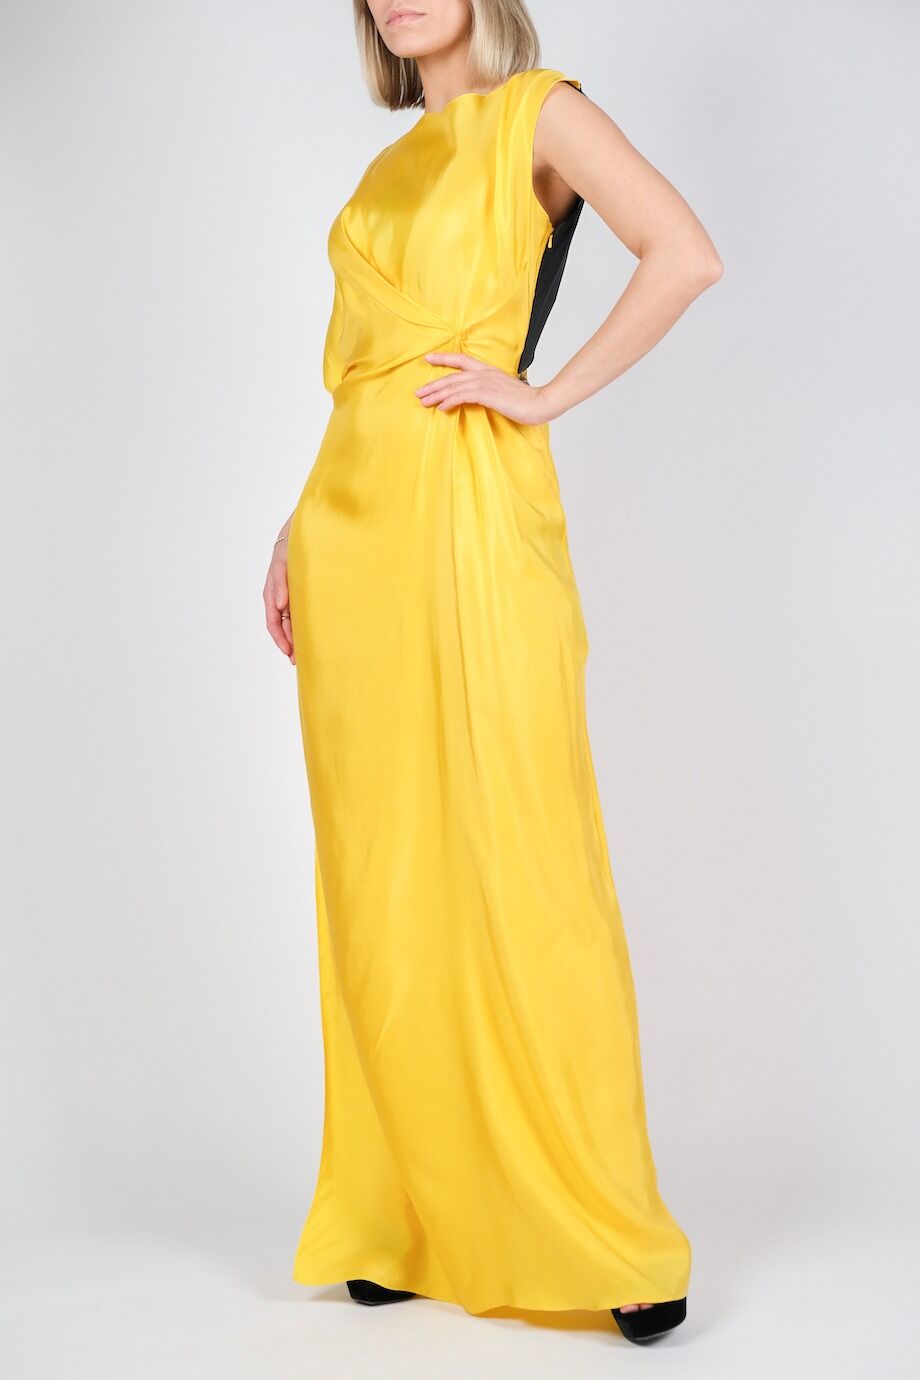 image 2 Платье в пол желтого цвета с черной спинкой